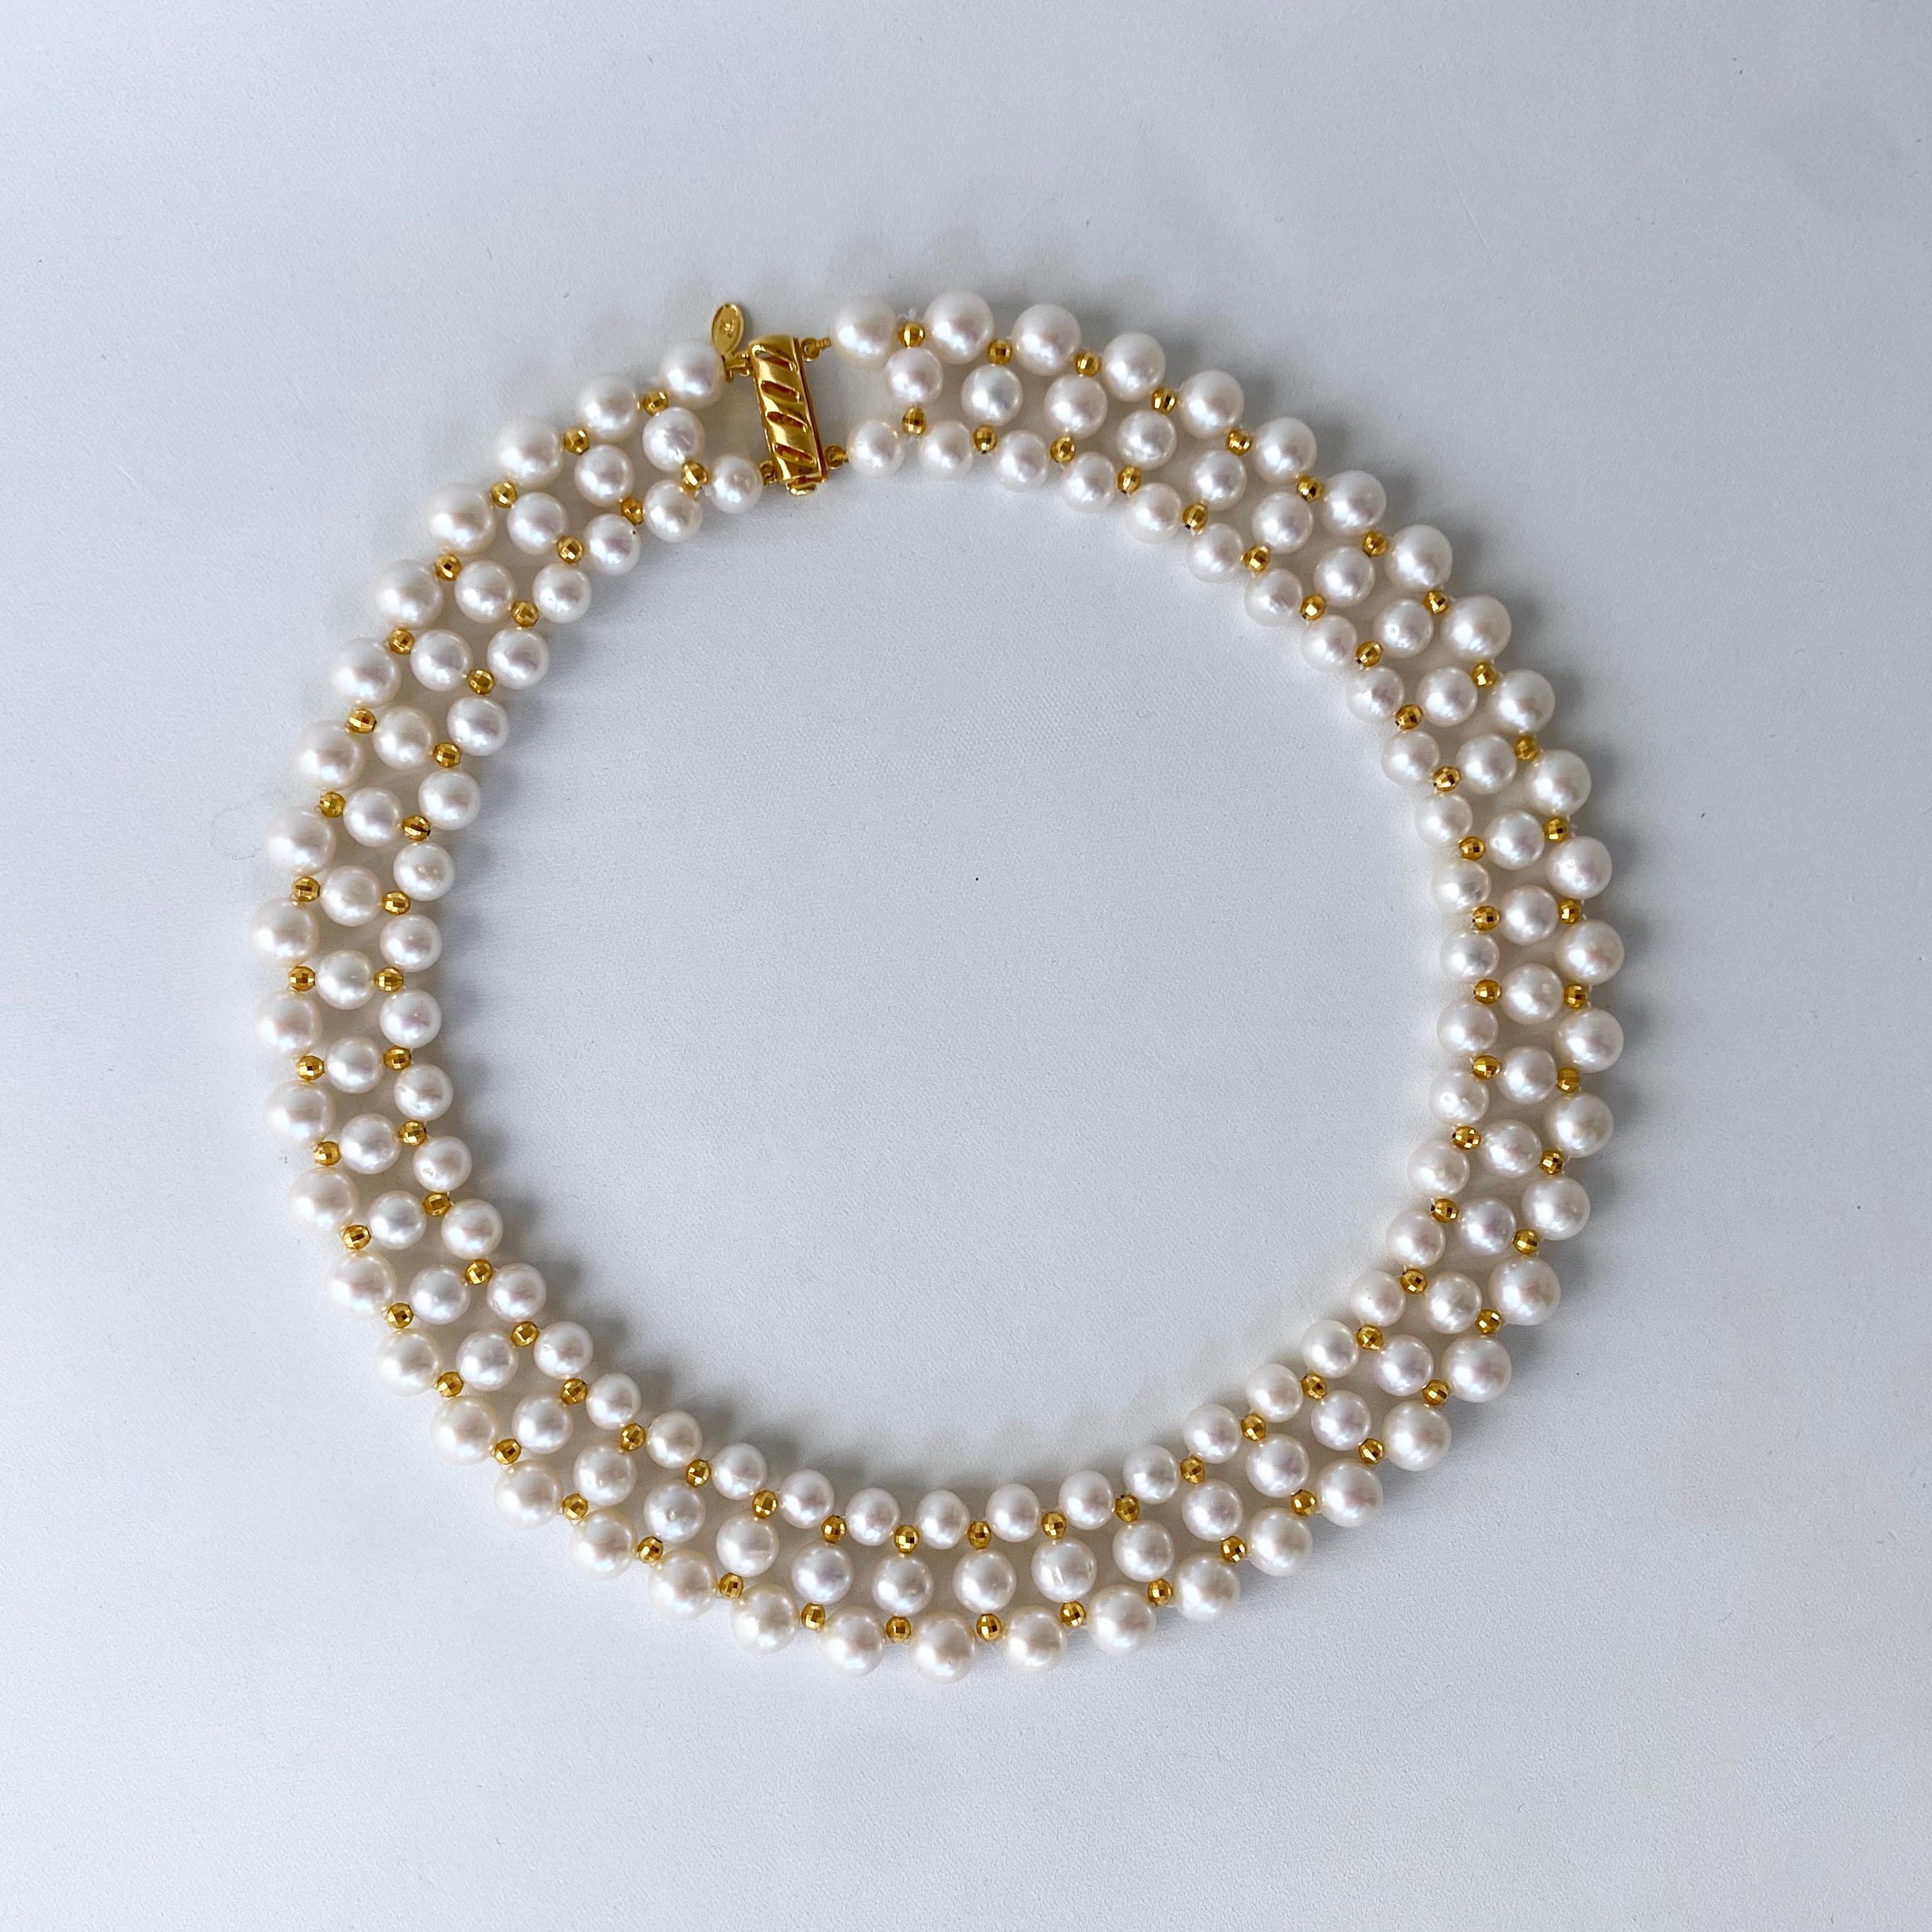 Magnifique collier de perles tissées, orné de perles à facettes plaquées or jaune 14k - argent. Trois rangs de perles, de taille graduelle, sont tissés ensemble en un doux motif de dentelle, inspiré des bijoux du monde ancien. Des perles d'argent